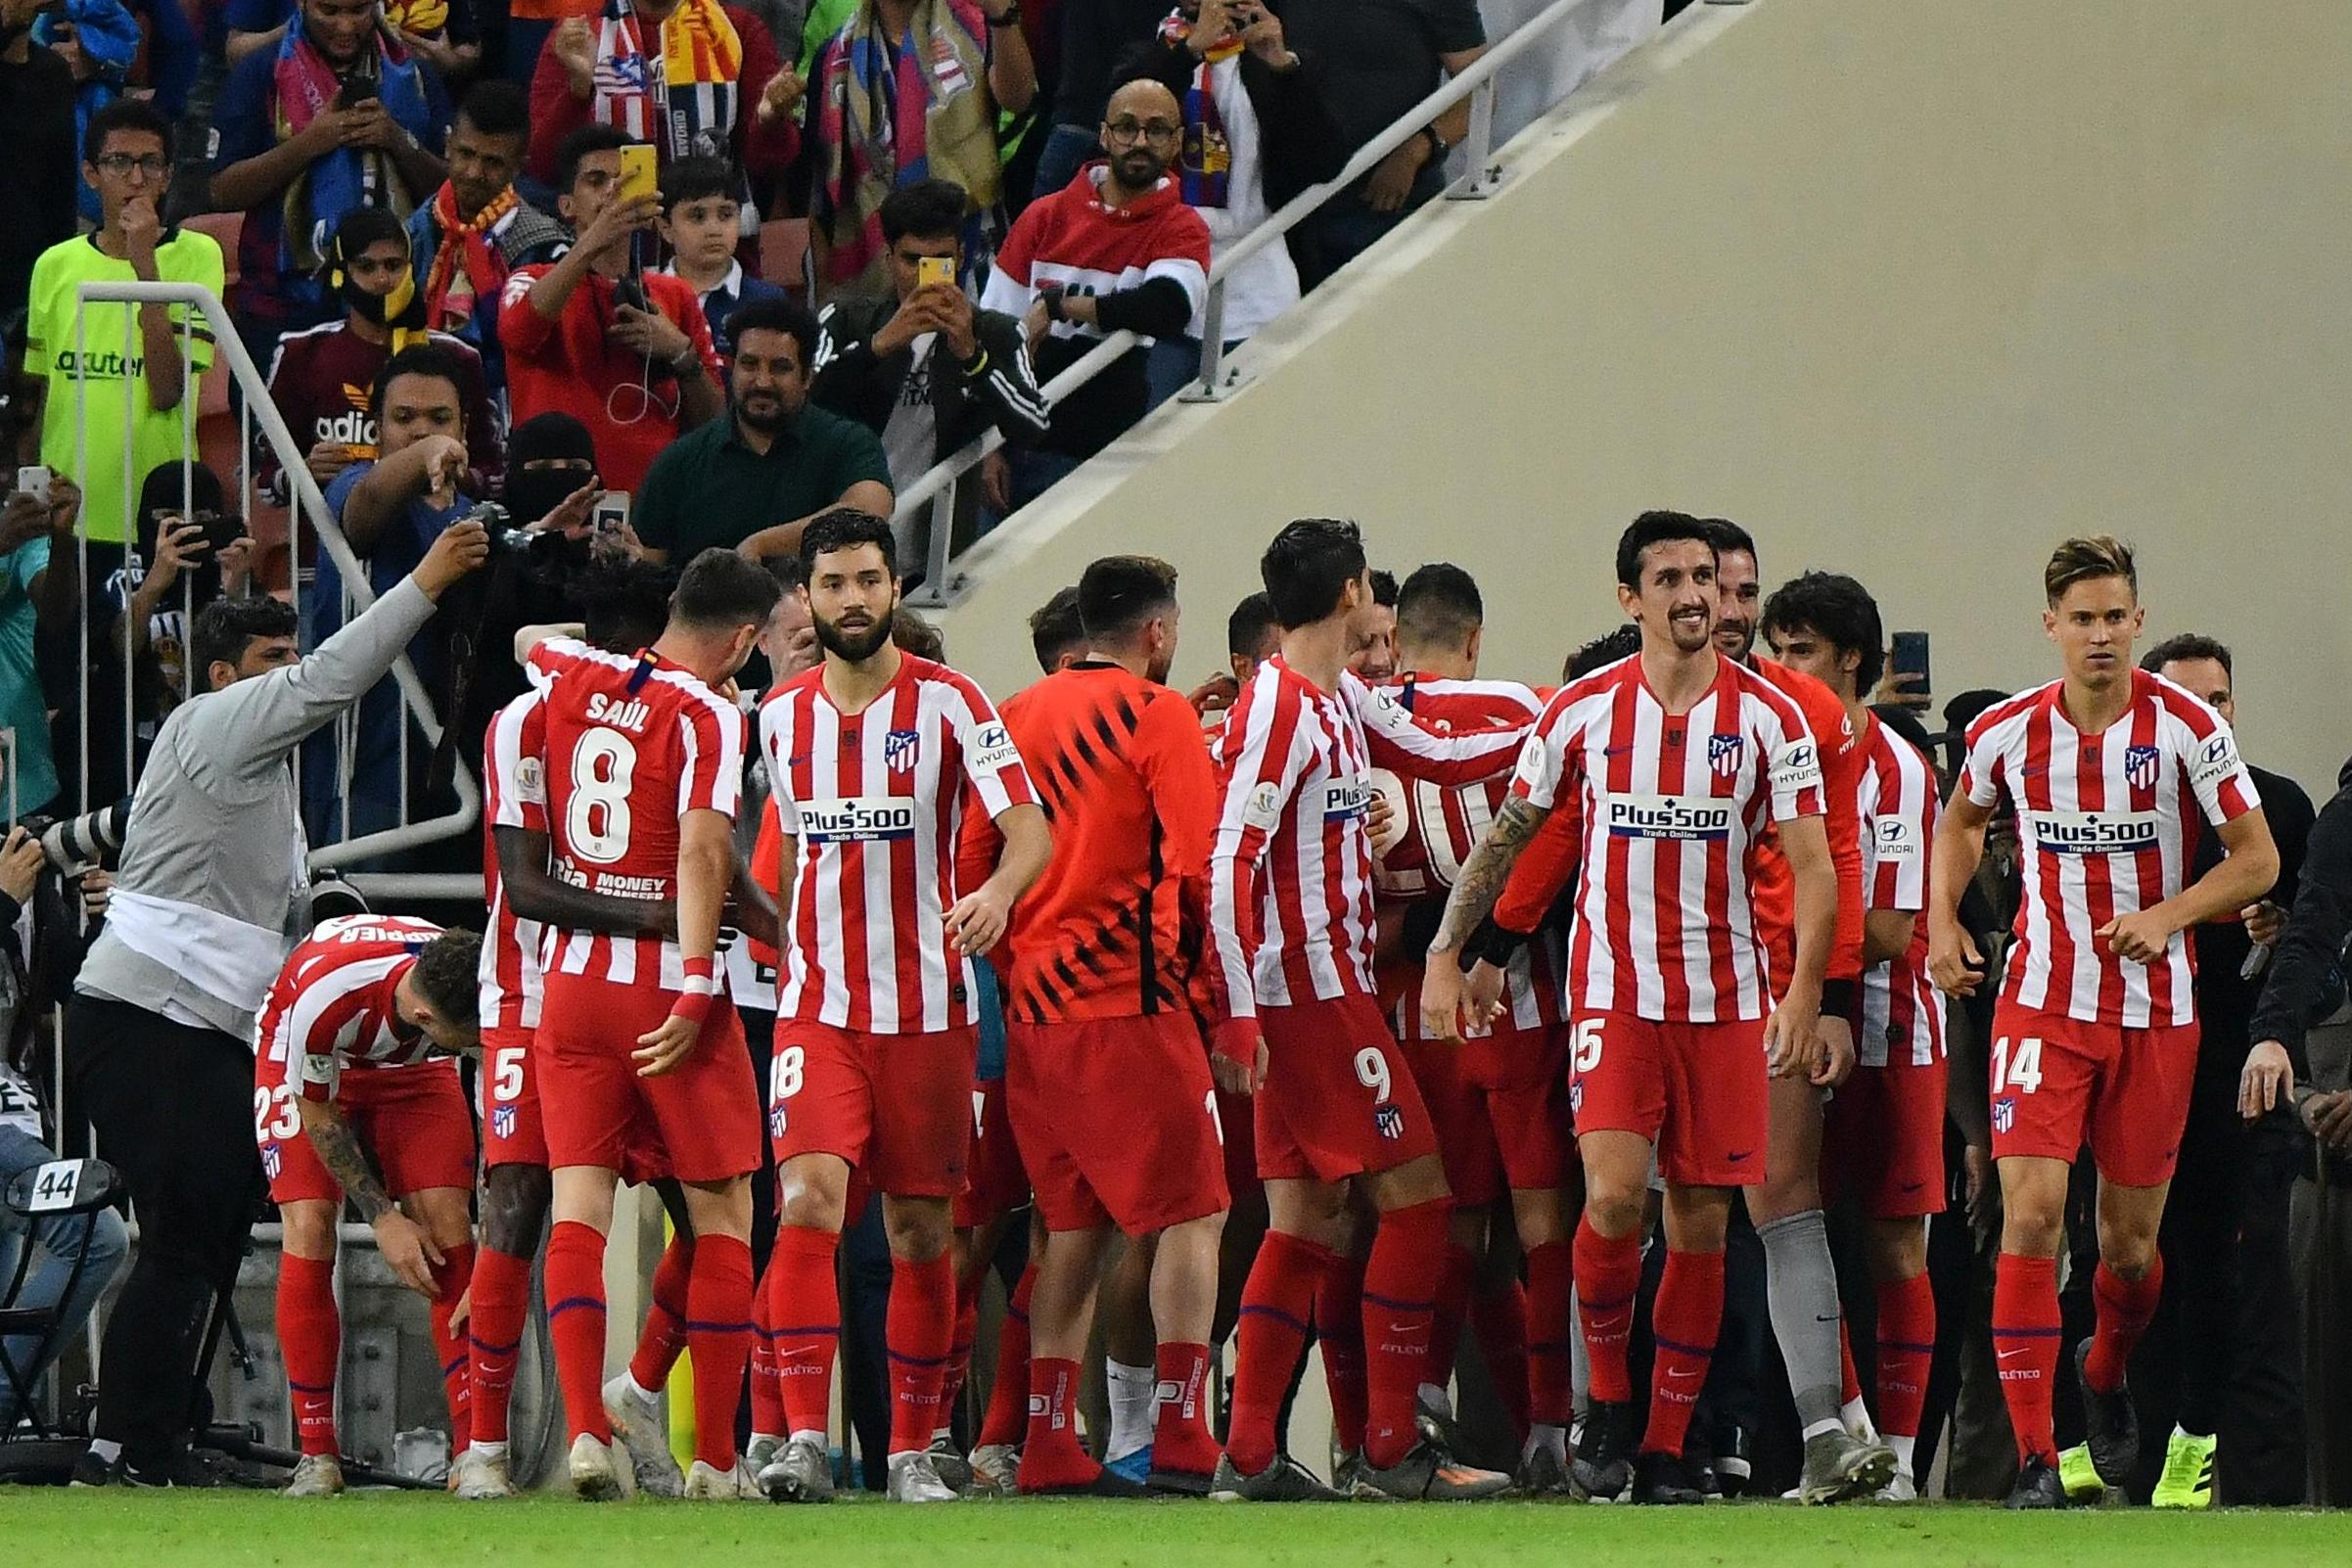 Μπαρτσελόνα – Ατλέτικο Μαδρίτης 2-3: Σούπερ ανατροπή και τελικός!